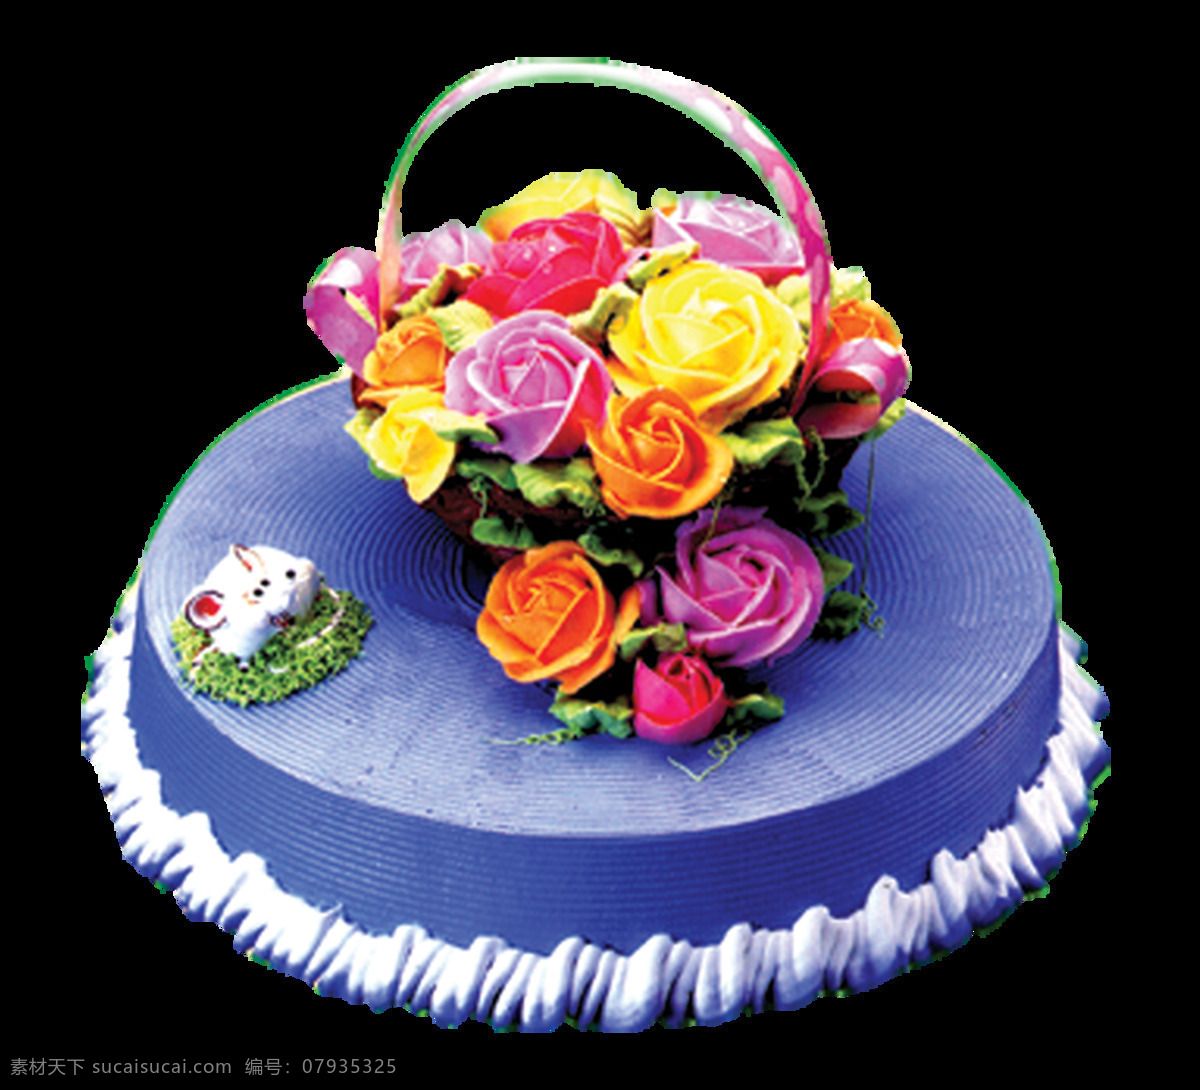 蓝色 奶油 花篮 蛋糕 png蛋糕 蛋糕图案 花朵蛋糕 节日蛋糕 蓝色蛋糕 奶油蛋糕 生日蛋糕